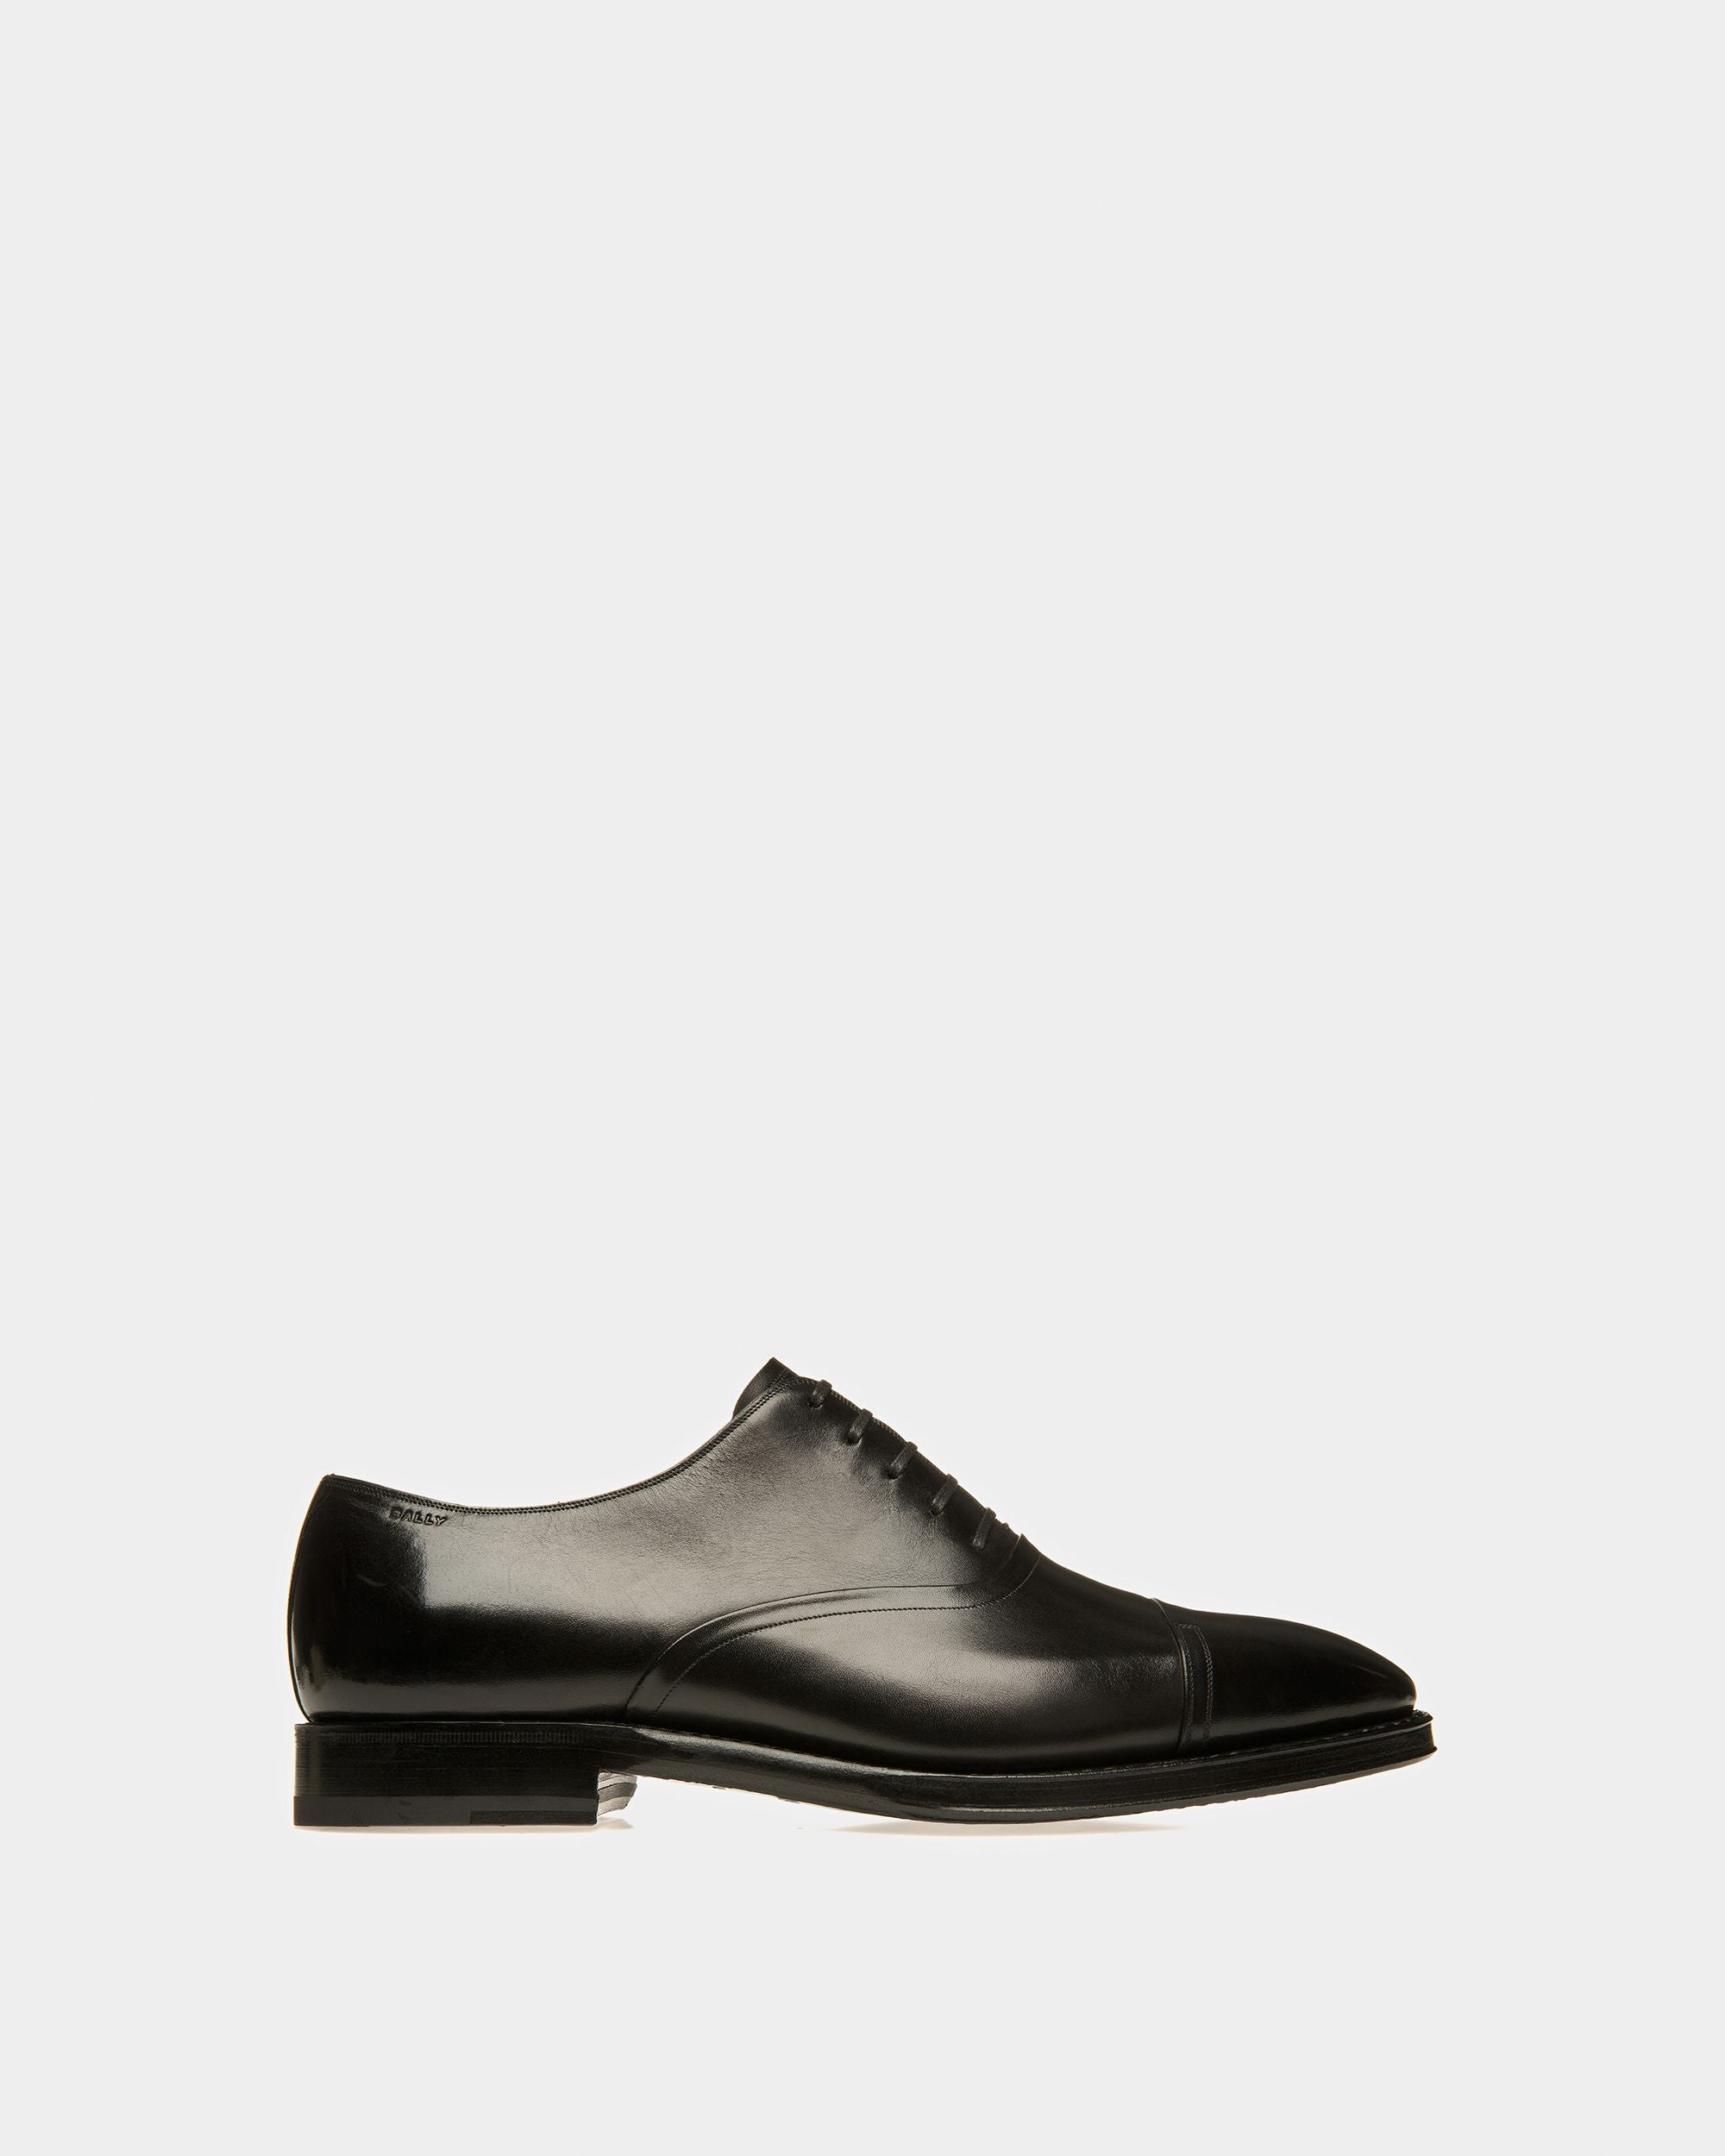 Selby | Oxford-Schuh für Herren | Schwarzes Leder | Still Life Seite